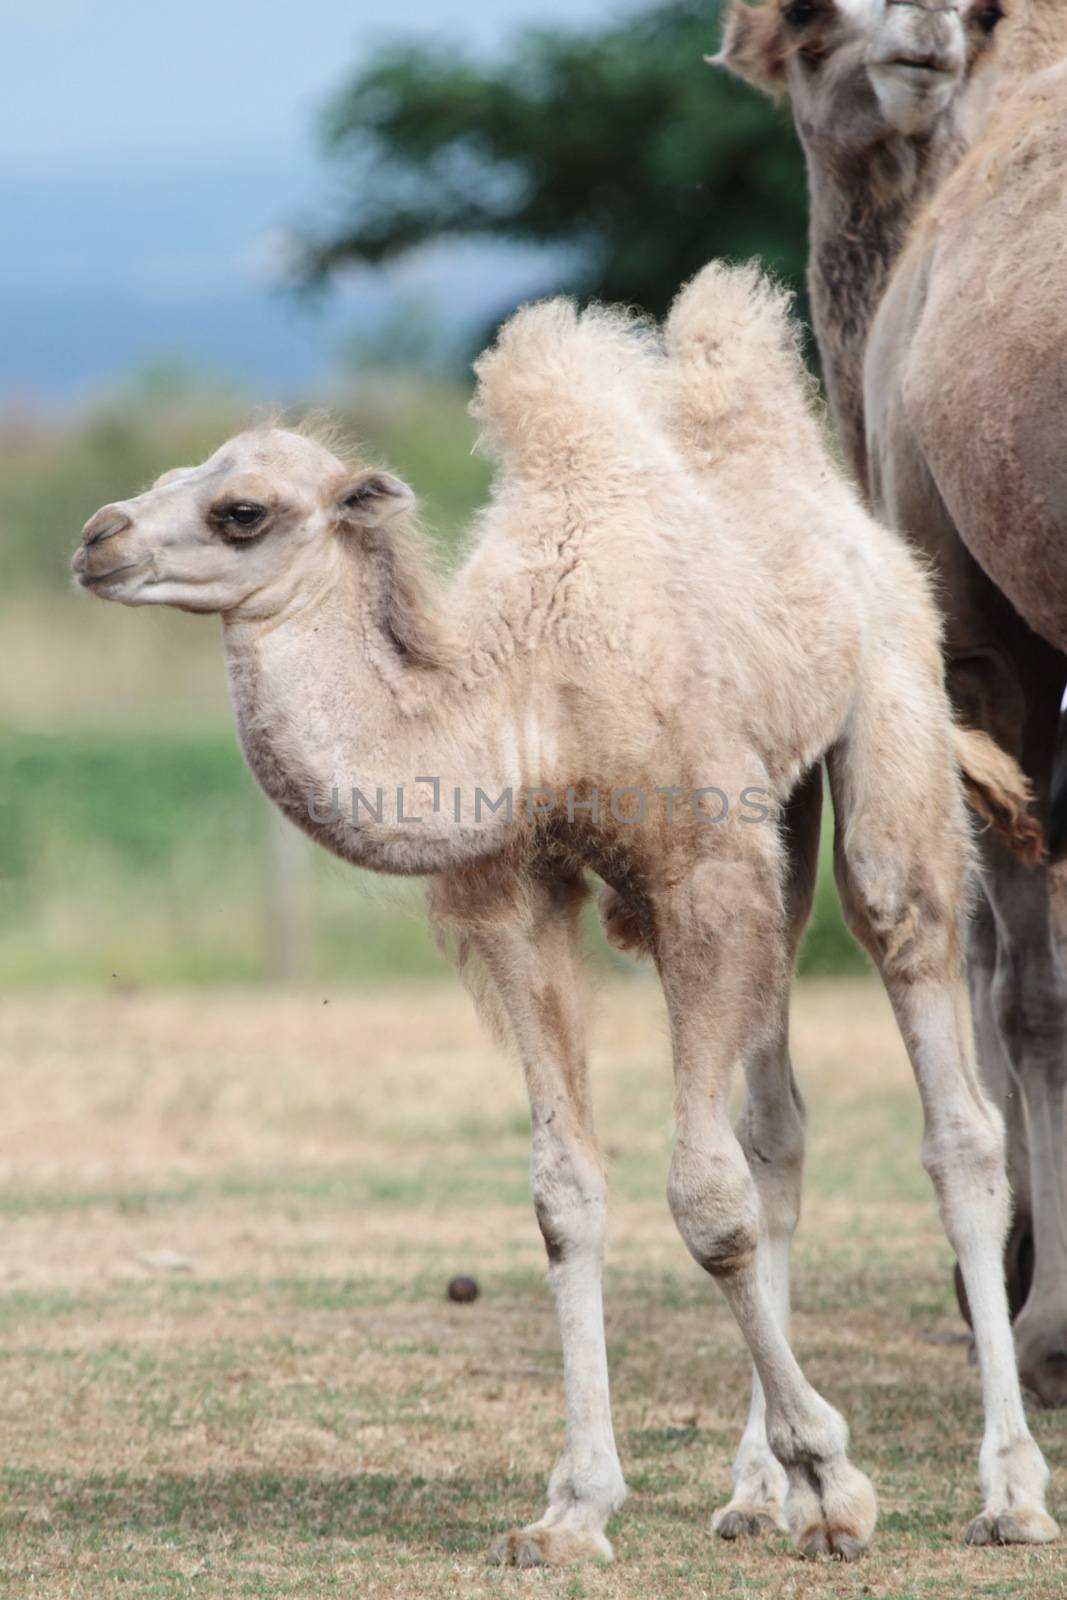 Camel baby calf by Elenaphotos21